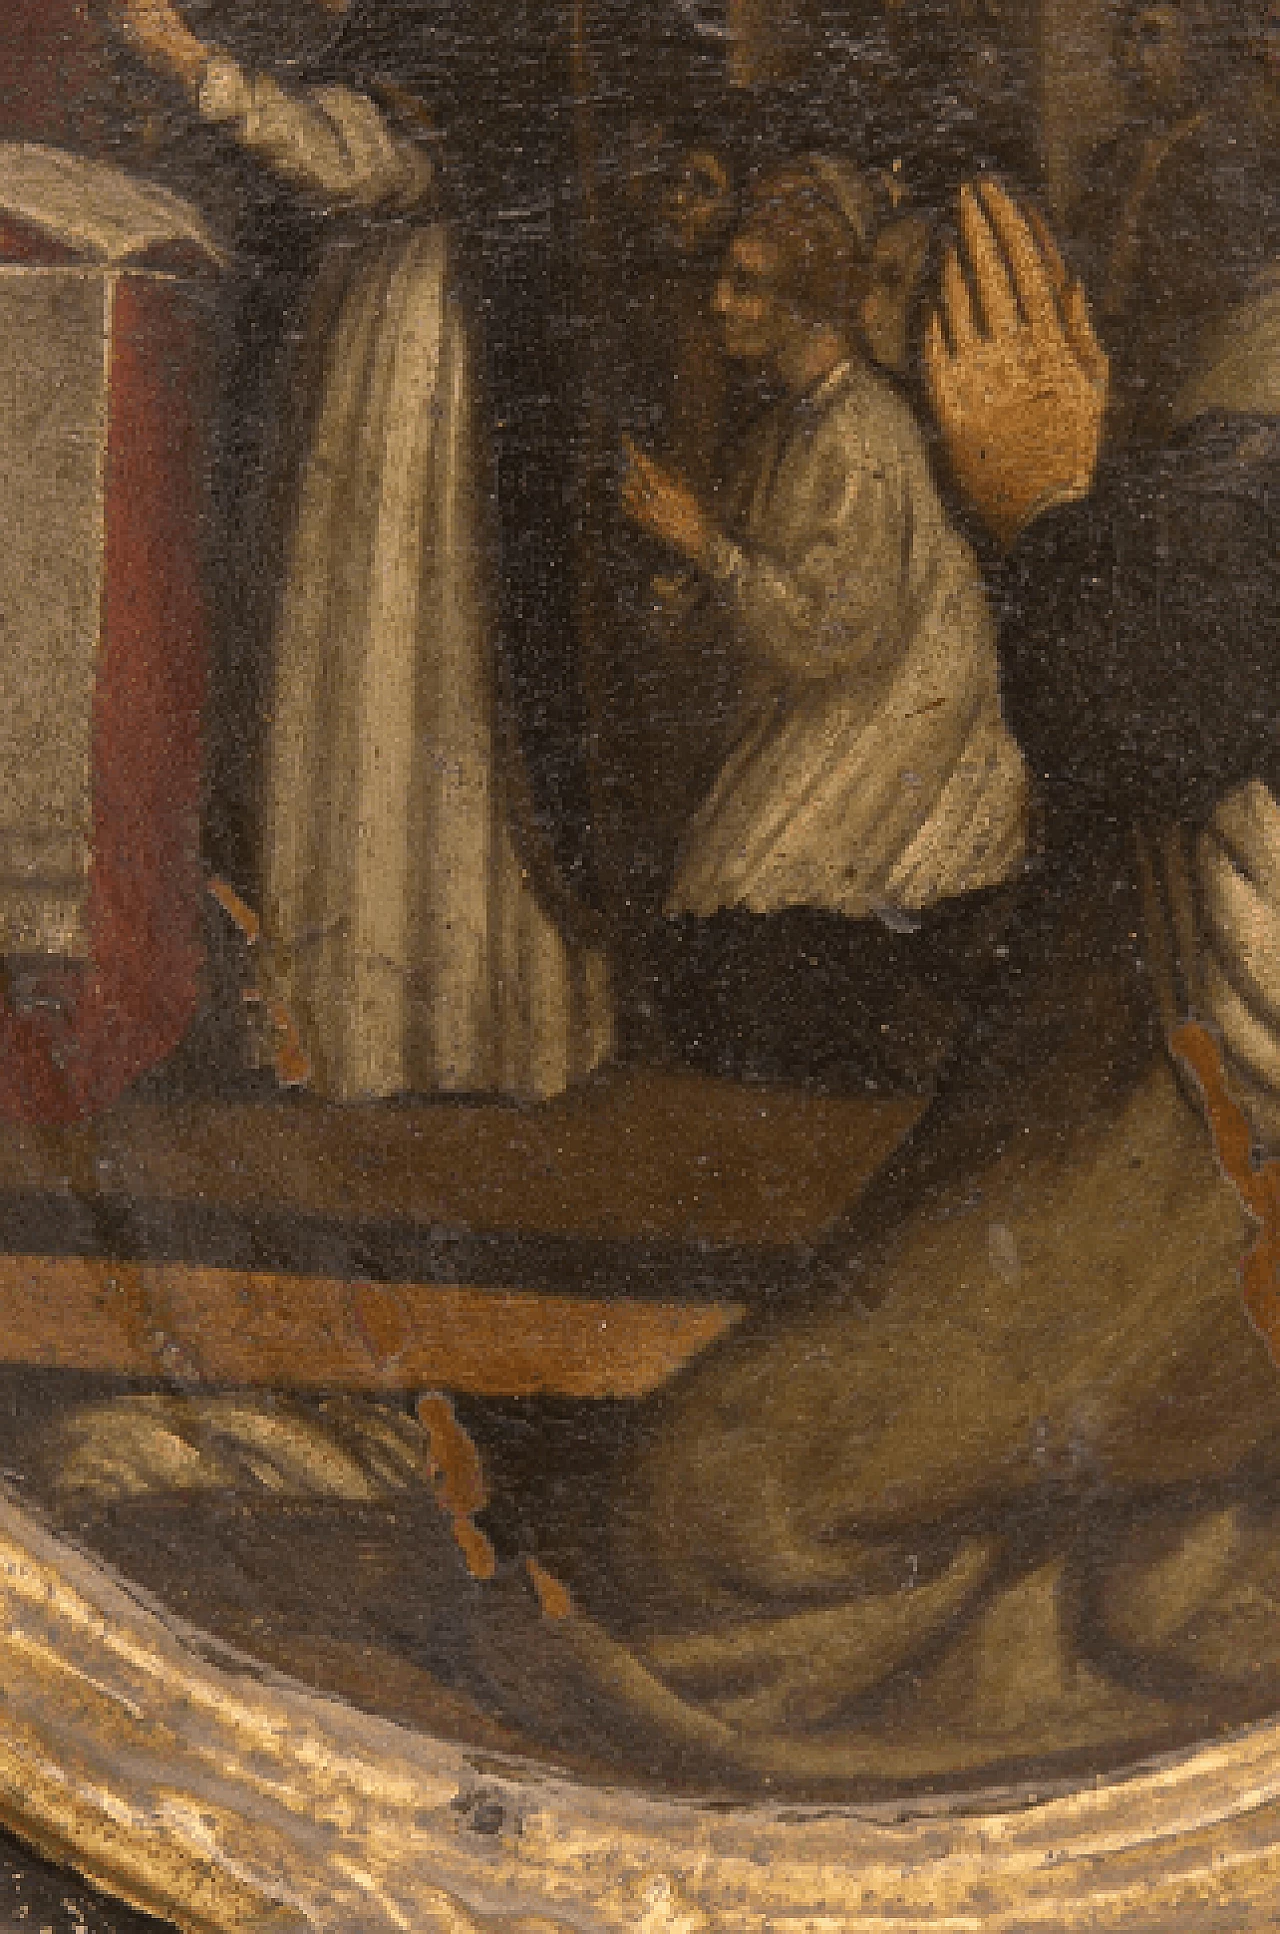 Dipinto della Predica di San Pietro attribuito a Nicolas-André Monsiau, '700 11